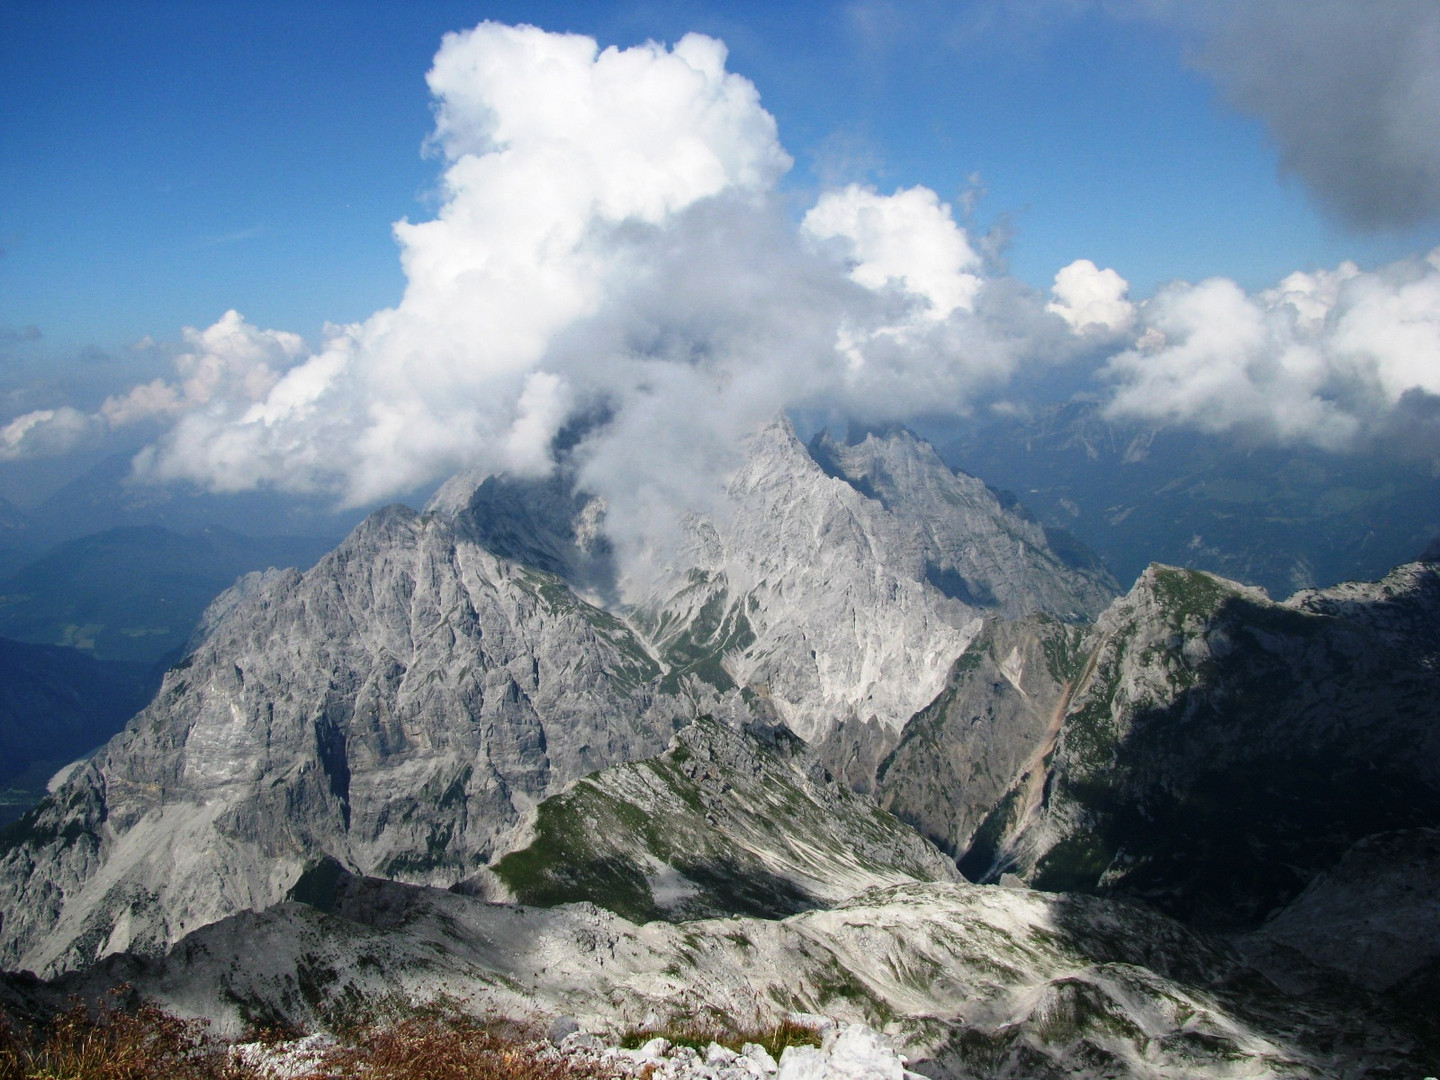 Blick auf die Watzmann Südspitze vom großen Hundstod (2593m) aus gesehen